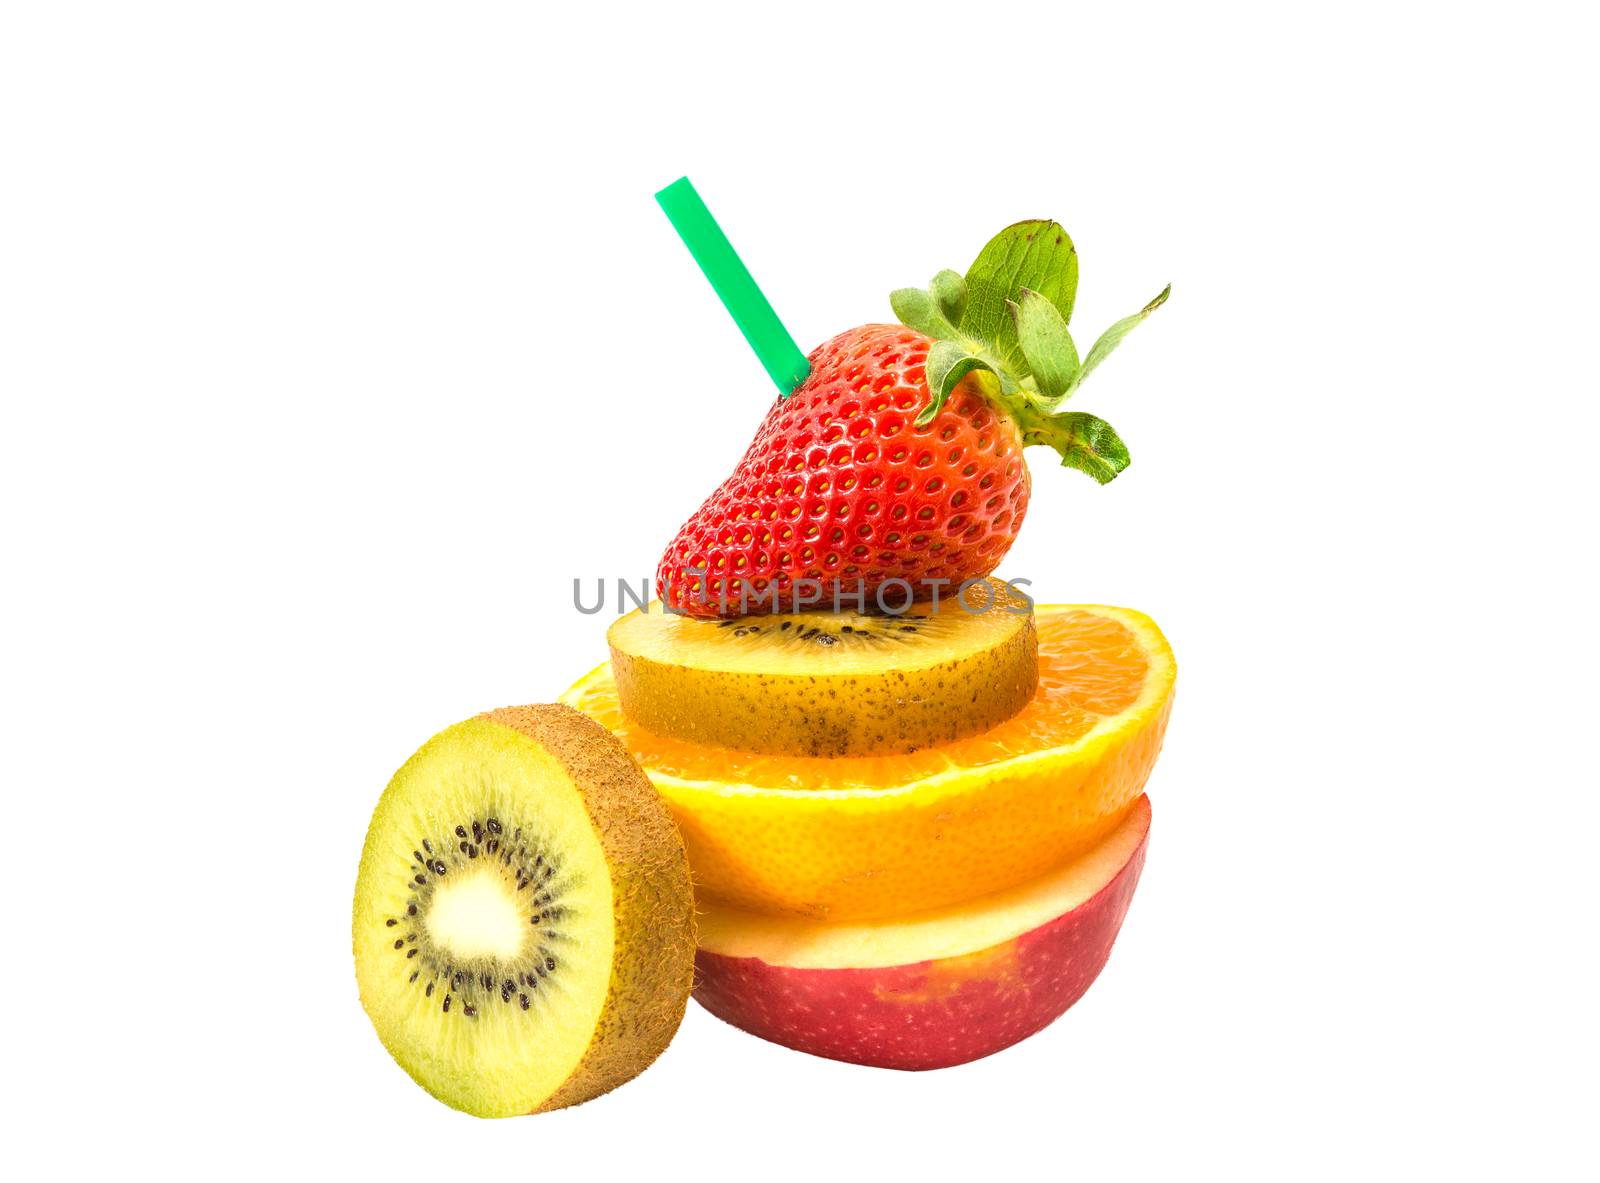 Juice fruits of strawberry, orange, kiwi, apple on white background